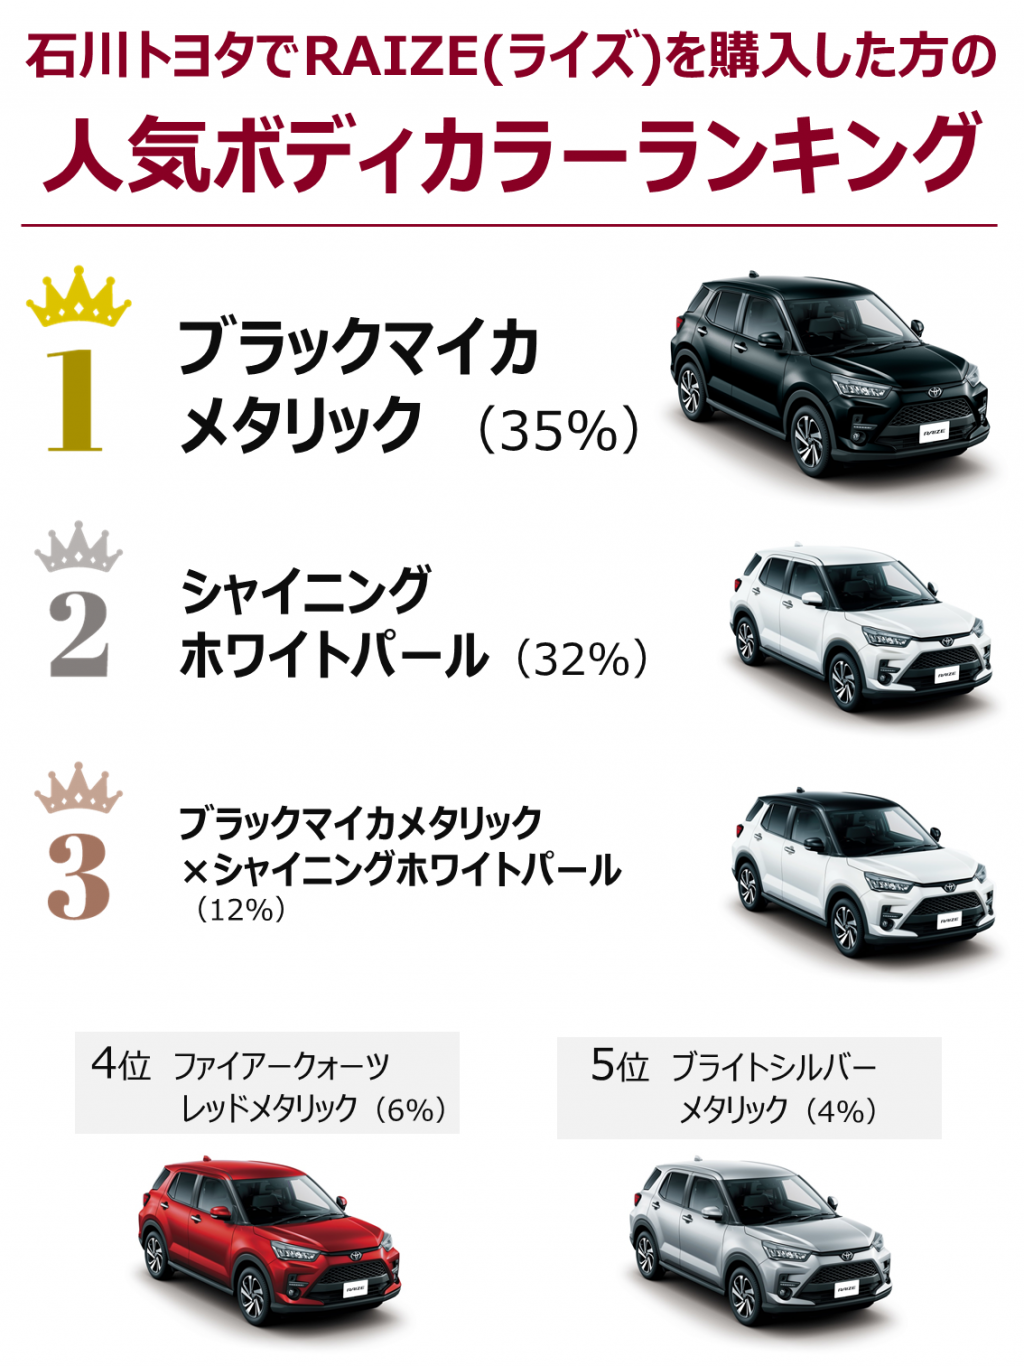 どんな色が好き Raize ライズ カラフルに取り揃えてます 石川トヨタ自動車株式会社 公式webサイト クルマ